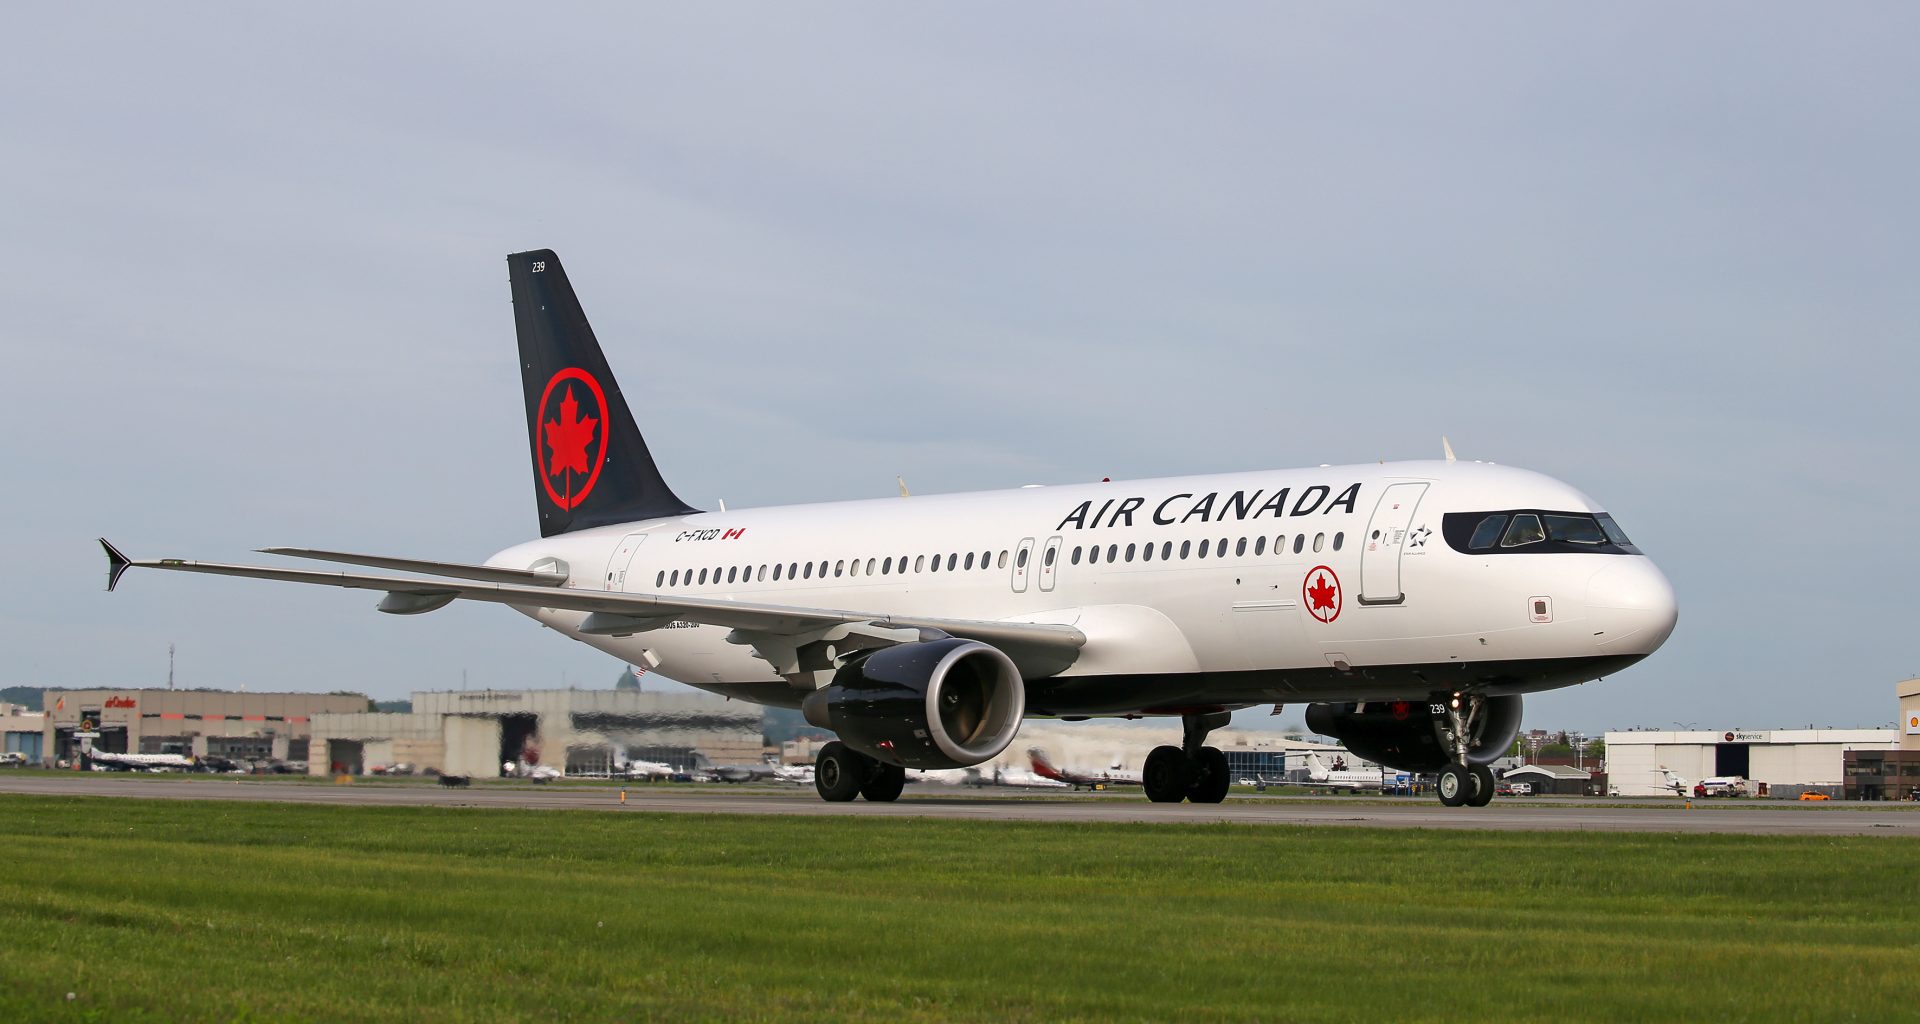 Air Canada aircraft sits on runway.